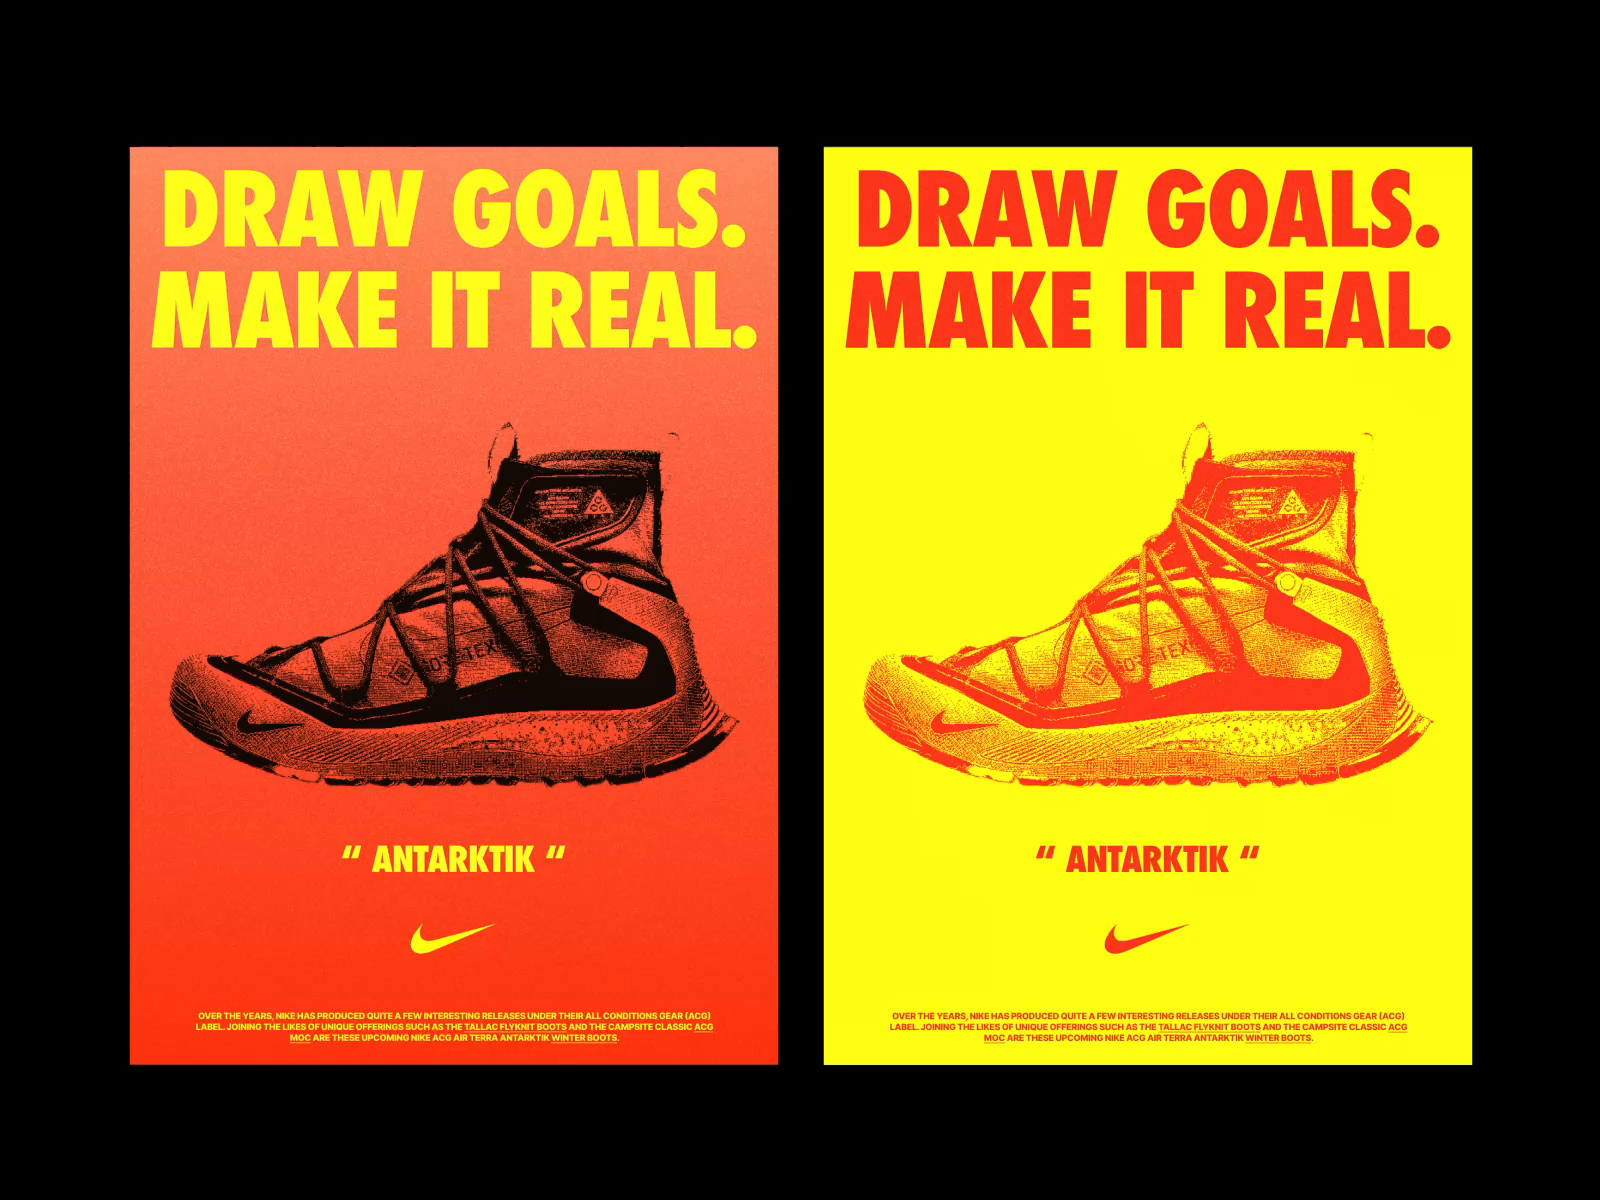 Aktentas aangenaam afgewerkt Nike shoes - Poster by Arsen Simonian on Dribbble